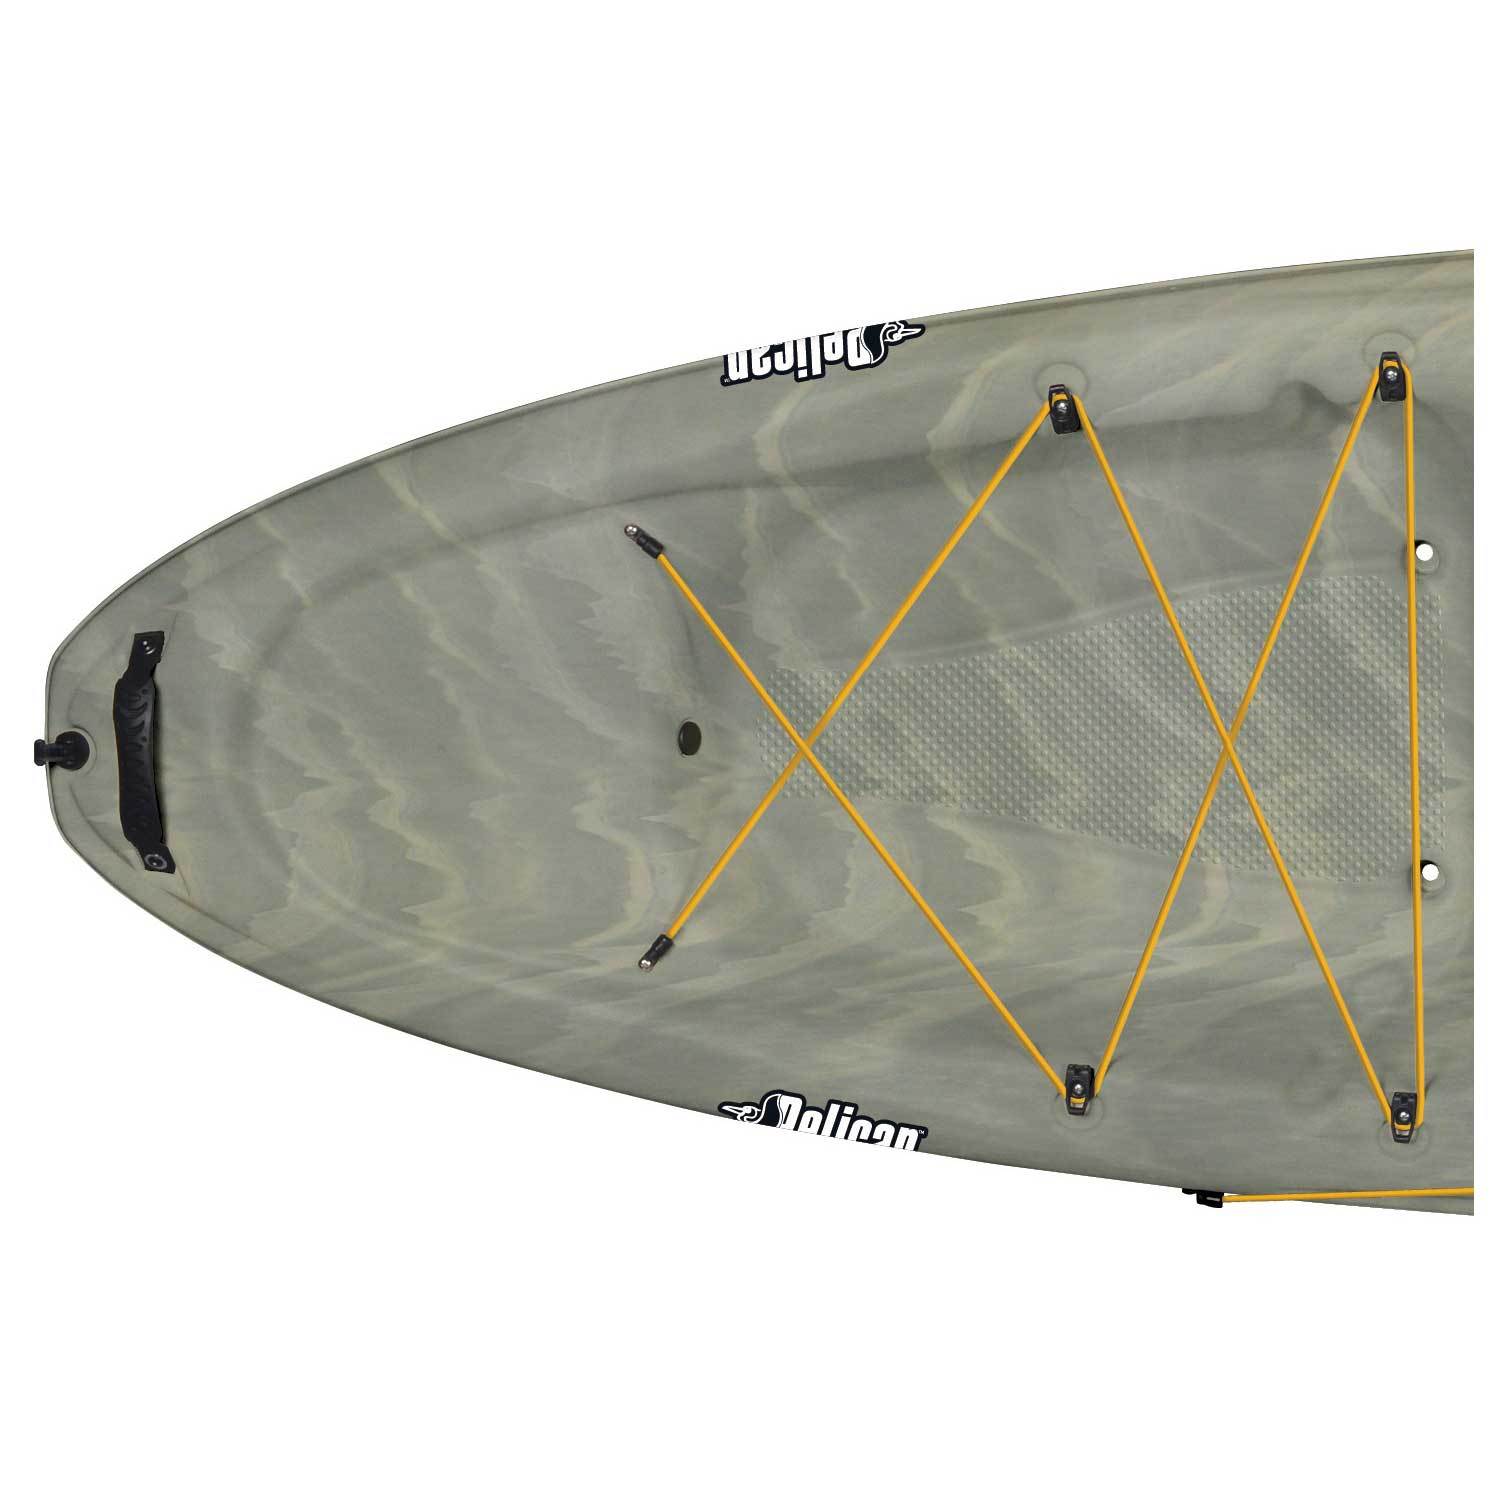 PELICAN Strike 120X Sit-On-Top Angler Kayak